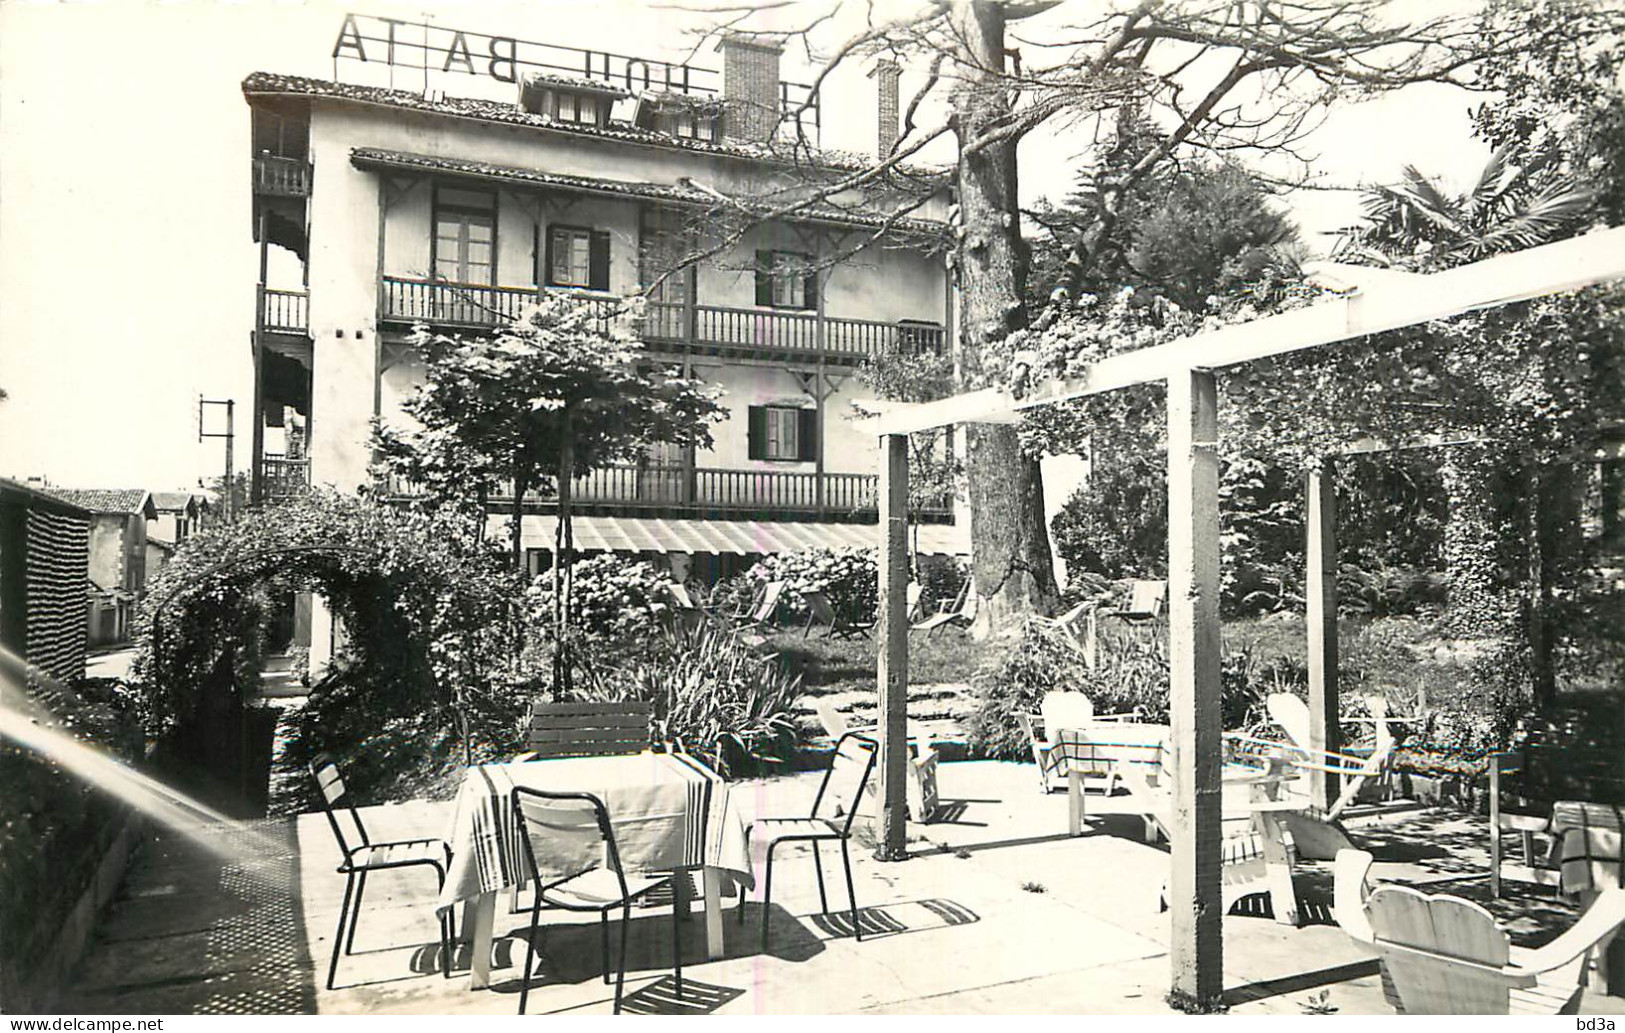 64 - CIBOURE - SAINT JEAN DE LUZ - HOTEL HELRO BAITA - Ciboure